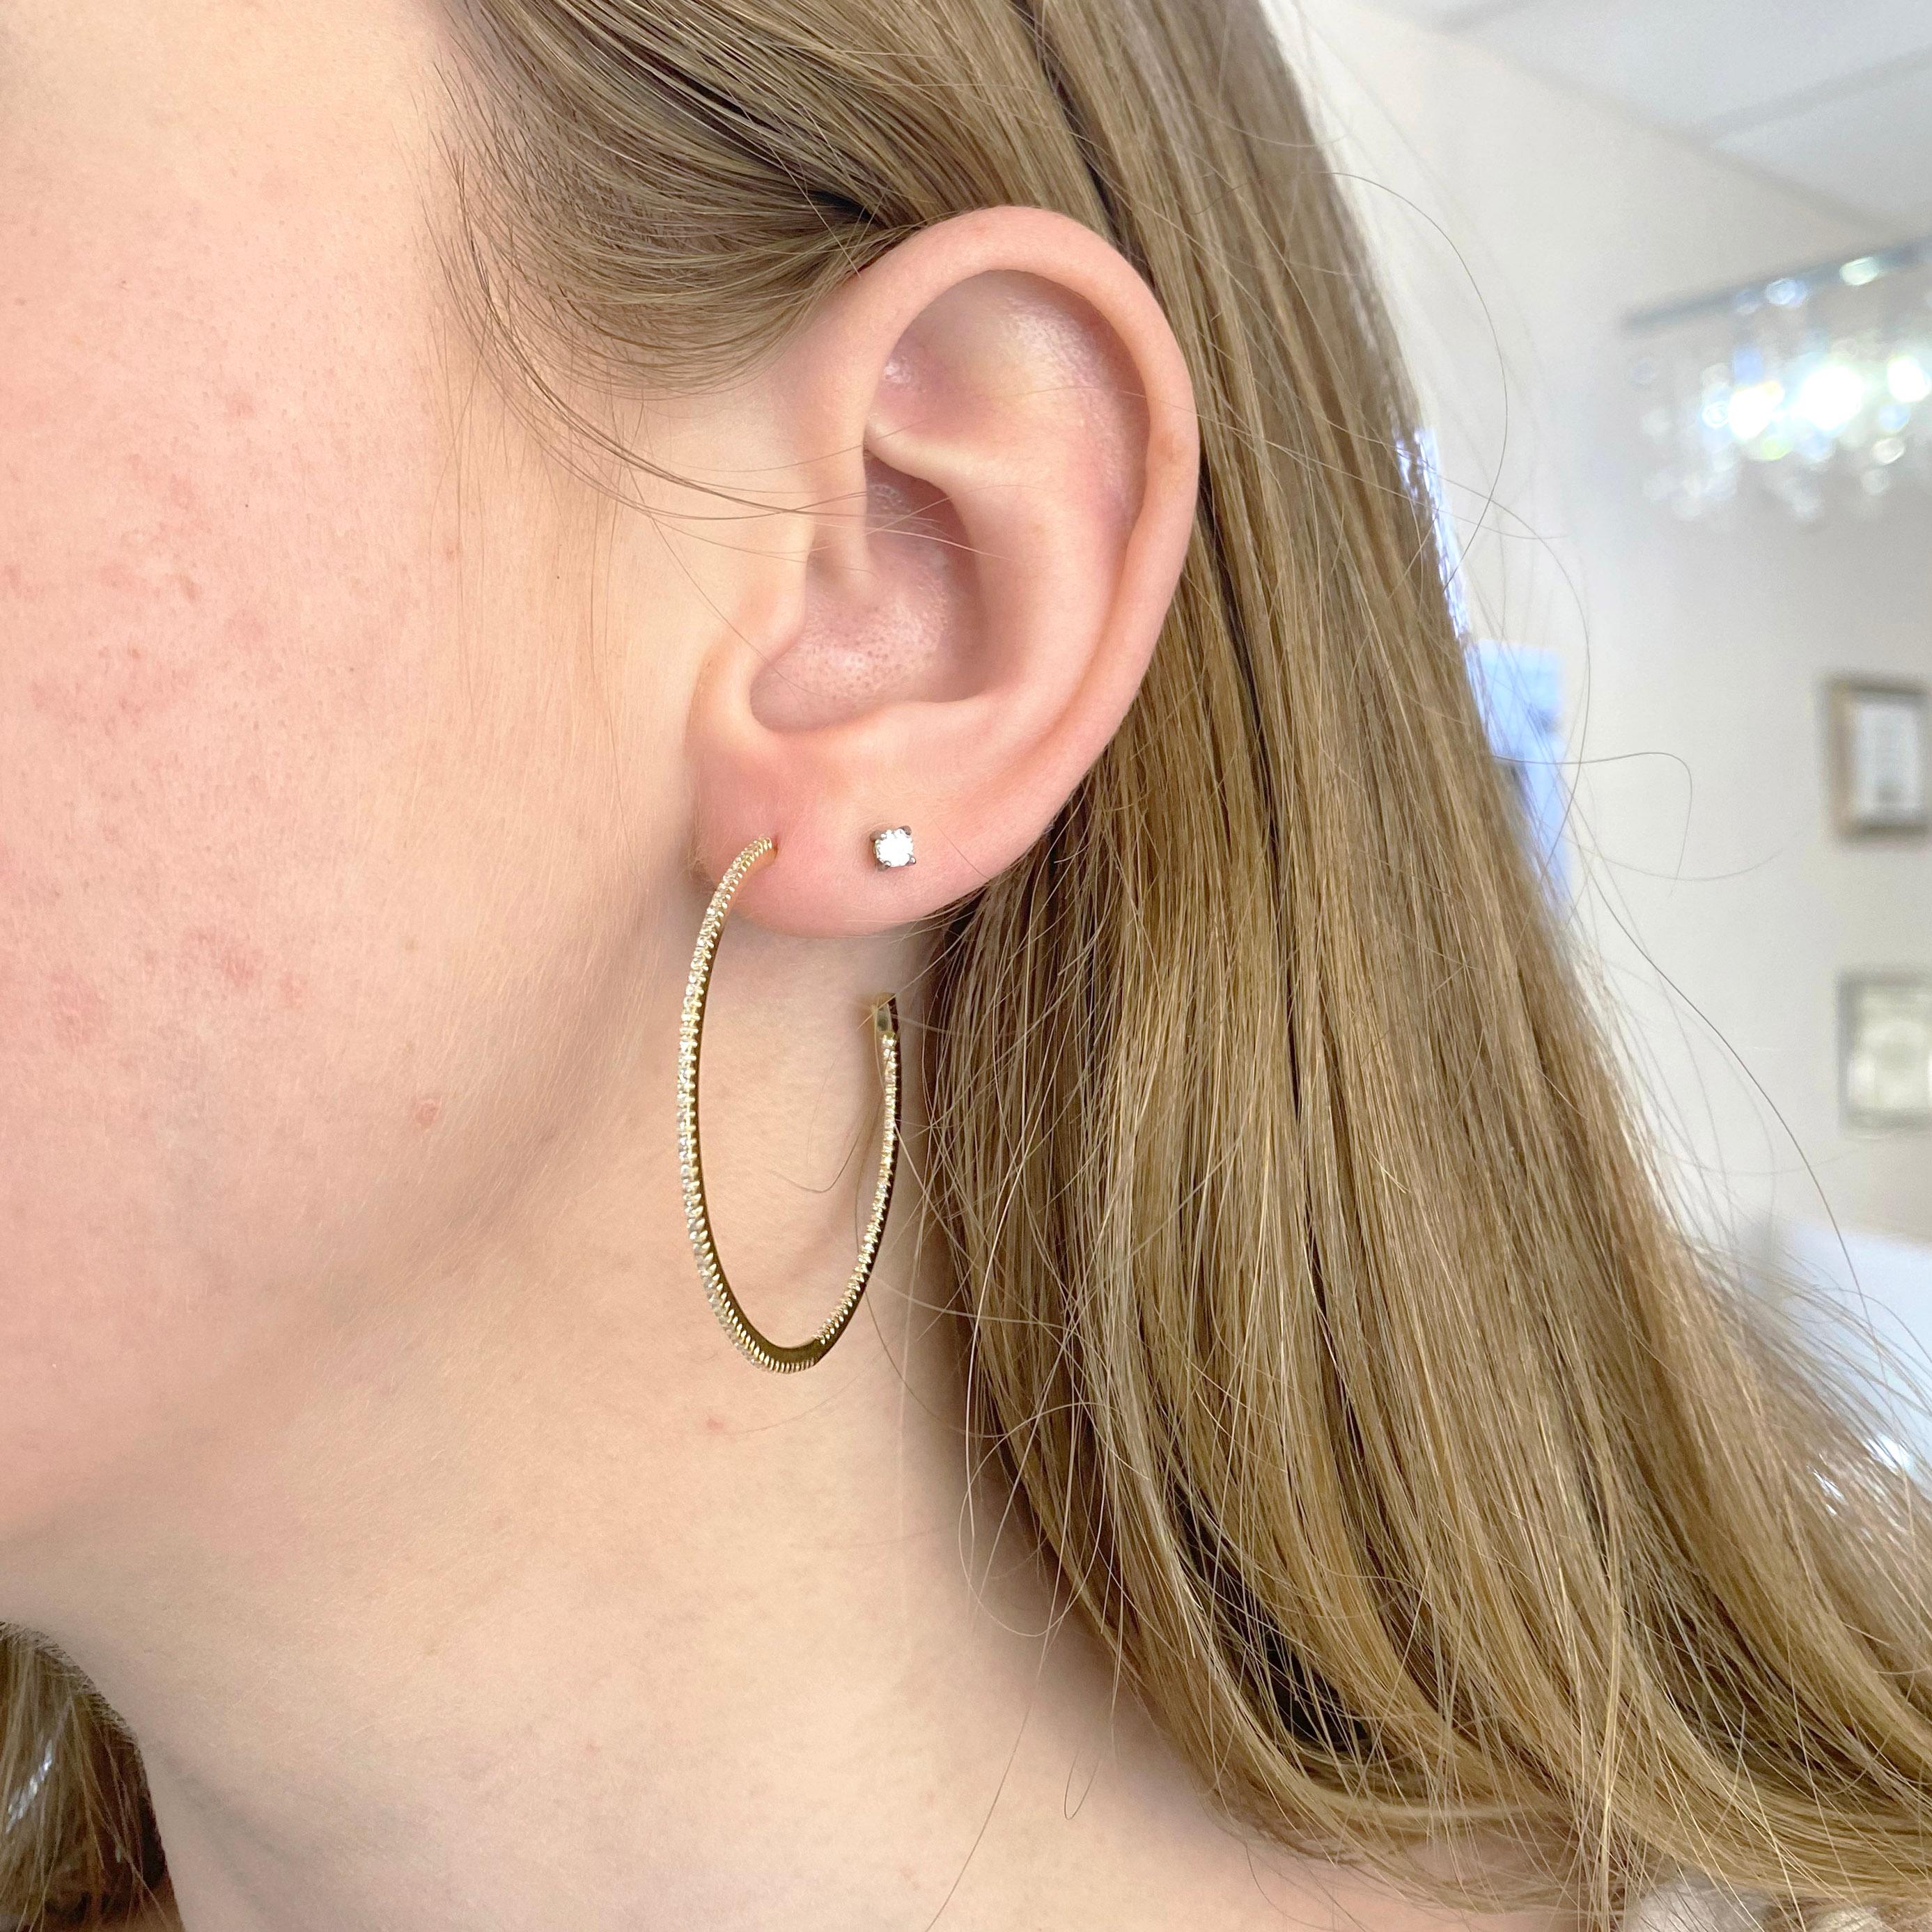 Ces boucles d'oreilles cerclées de diamants de 40 millimètres sont parfaites pour un look audacieux !  Chaque boucle d'oreille compte 92 diamants et forme un cercle continu. Les boucles d'oreille sont fabriquées en or jaune massif 14 carats.  Ces